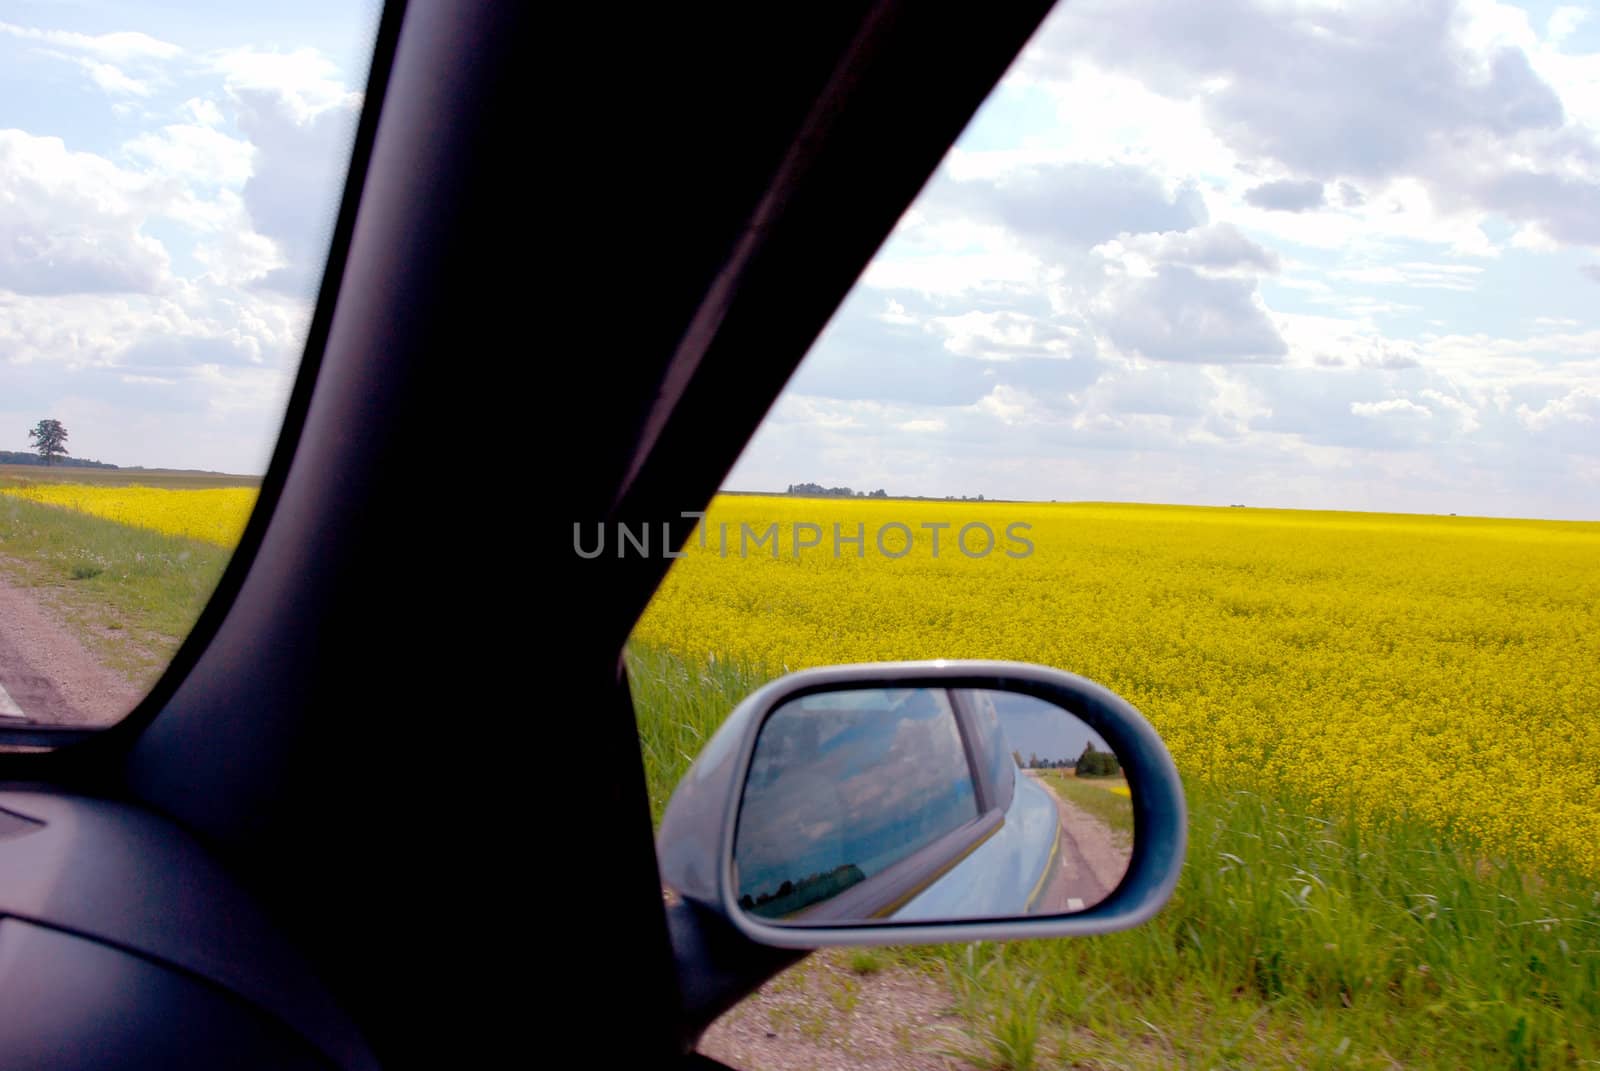 Midsummer journey through the yellow rape fields